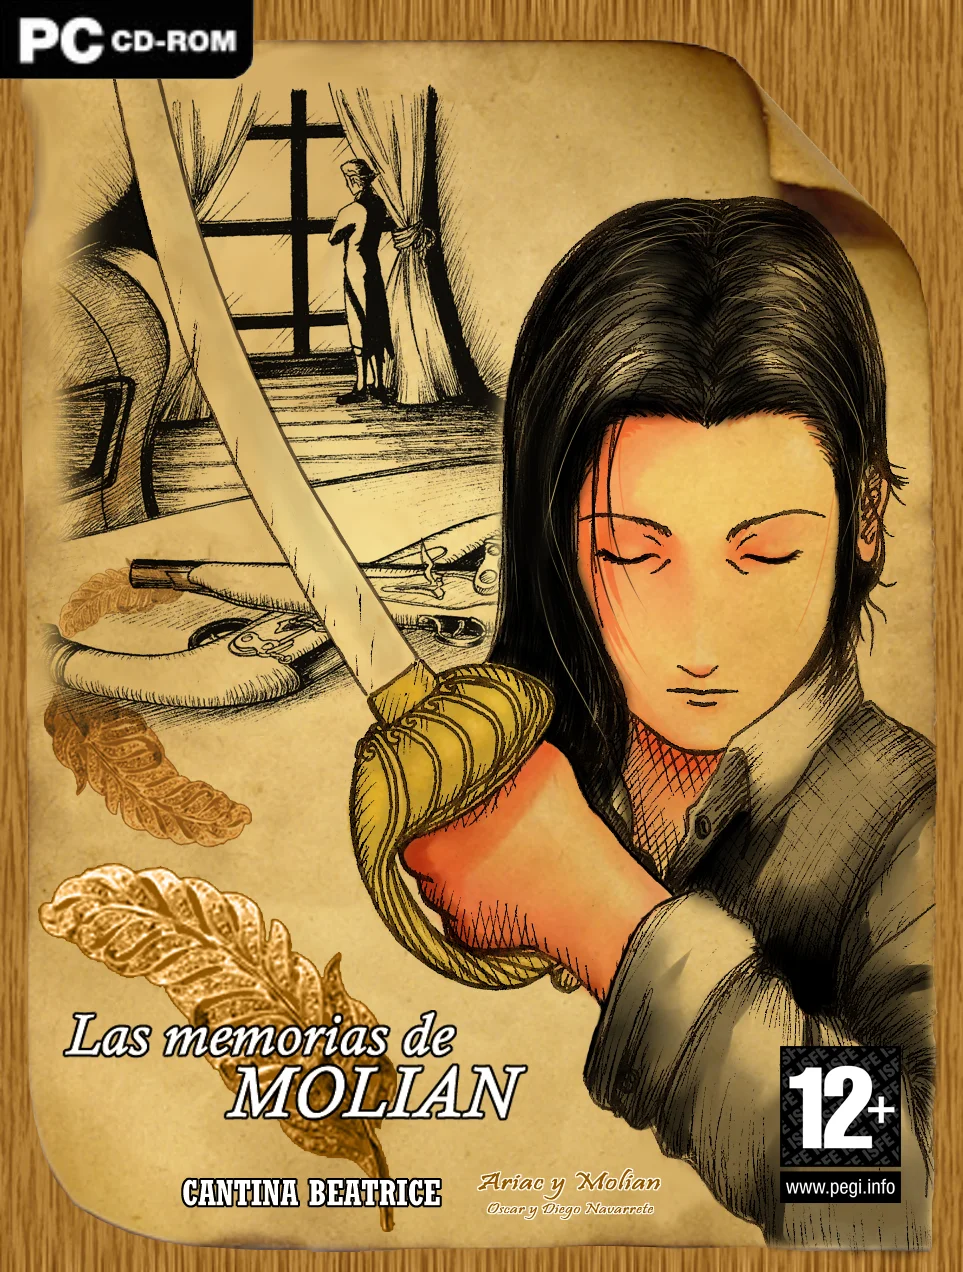 Las Memorias de Molian, portada - Comunidad hispana RPG maker (parte 3)